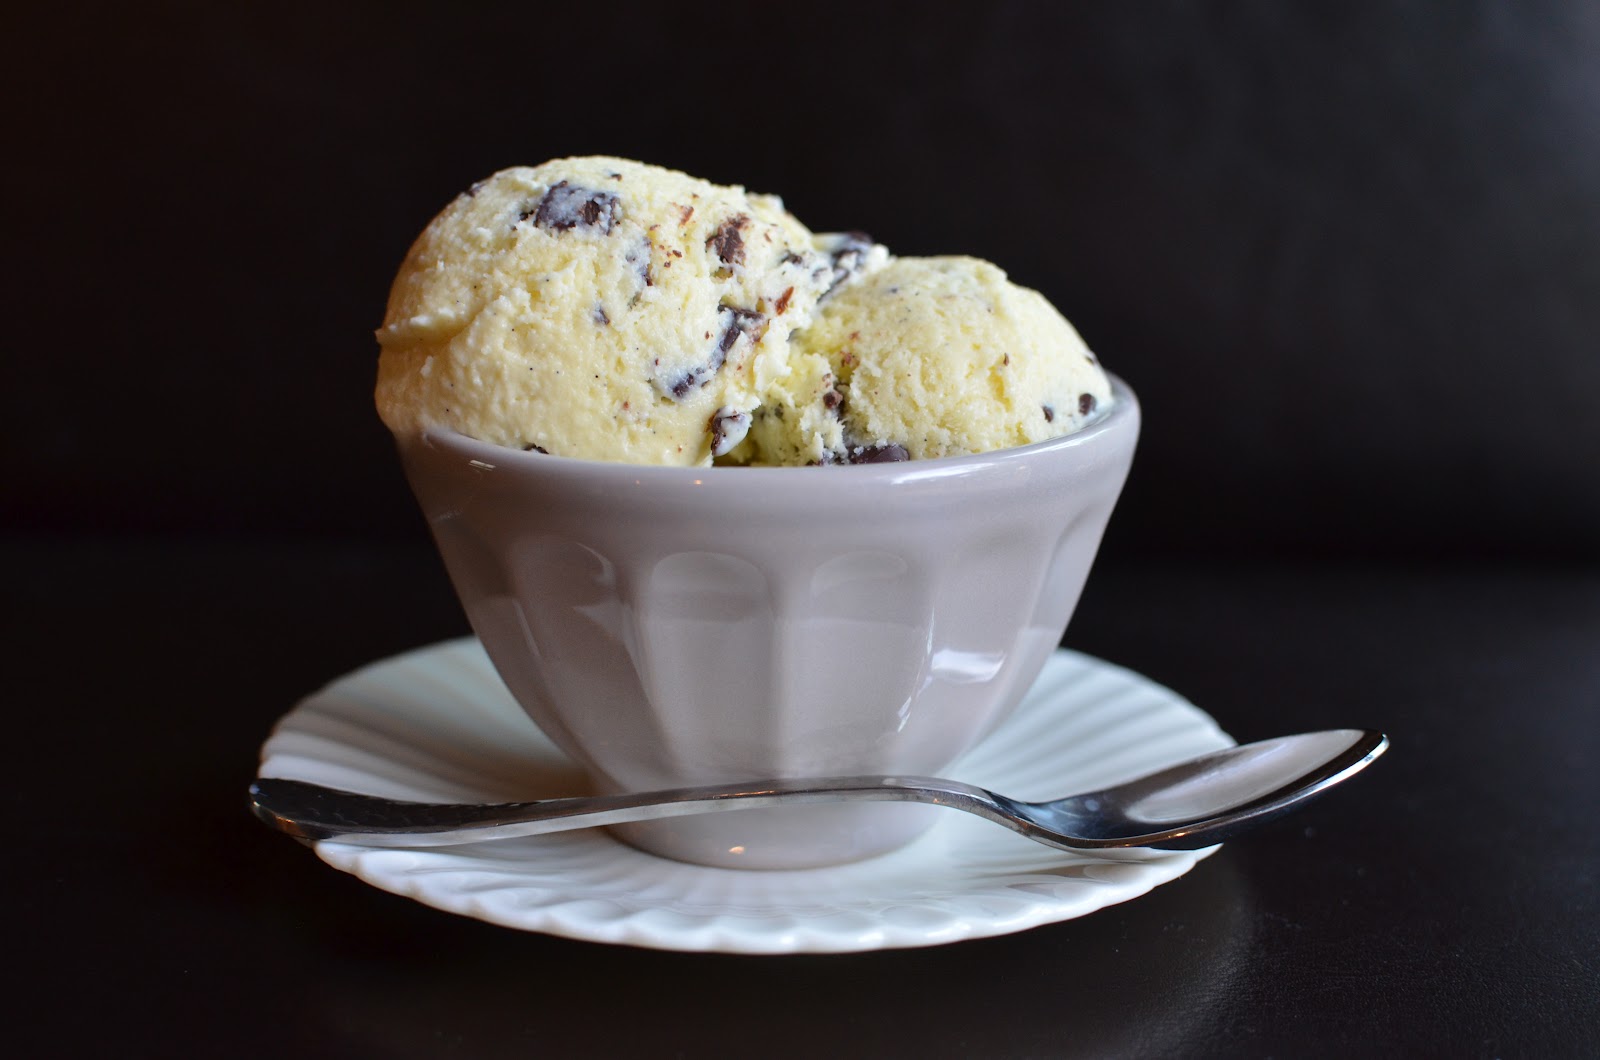 Ice Cream Makers: Buying an Ice Cream Machine - David Lebovitz